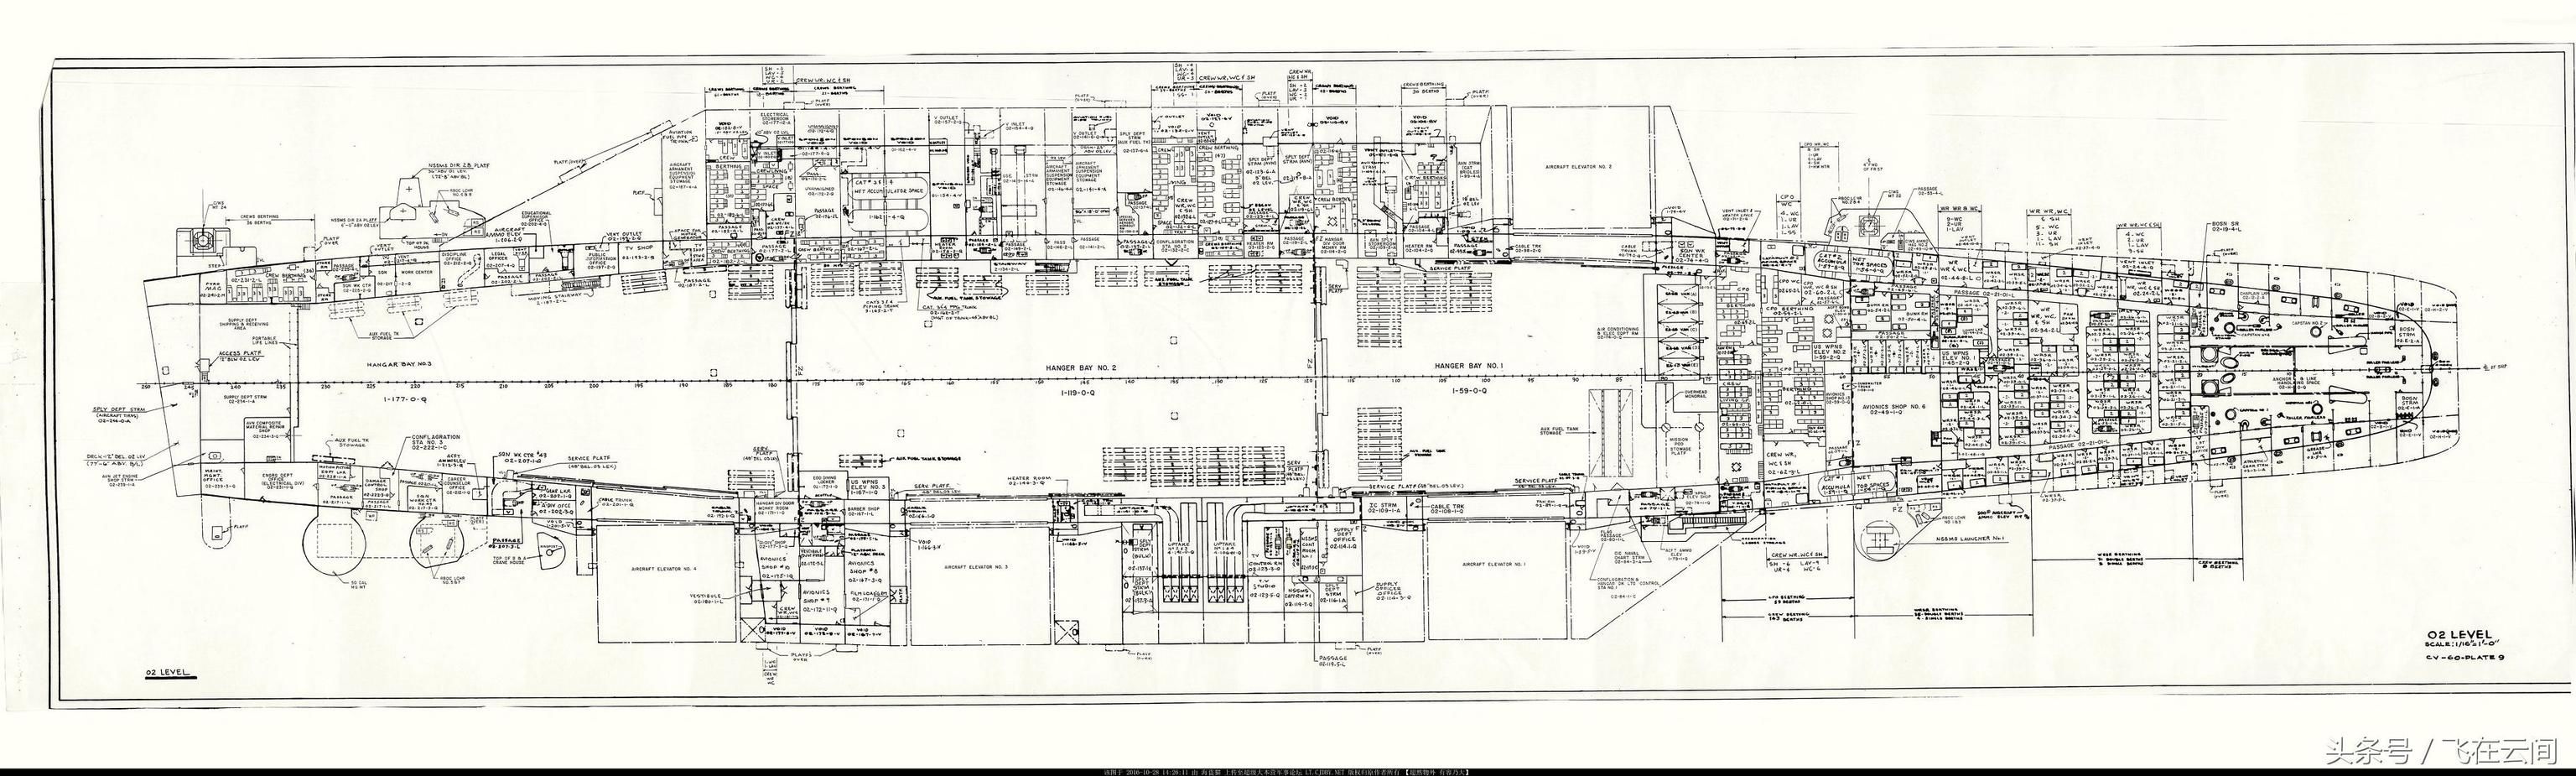 美国航空母舰的设计图纸,原装真货,看看一艘航母有多复杂